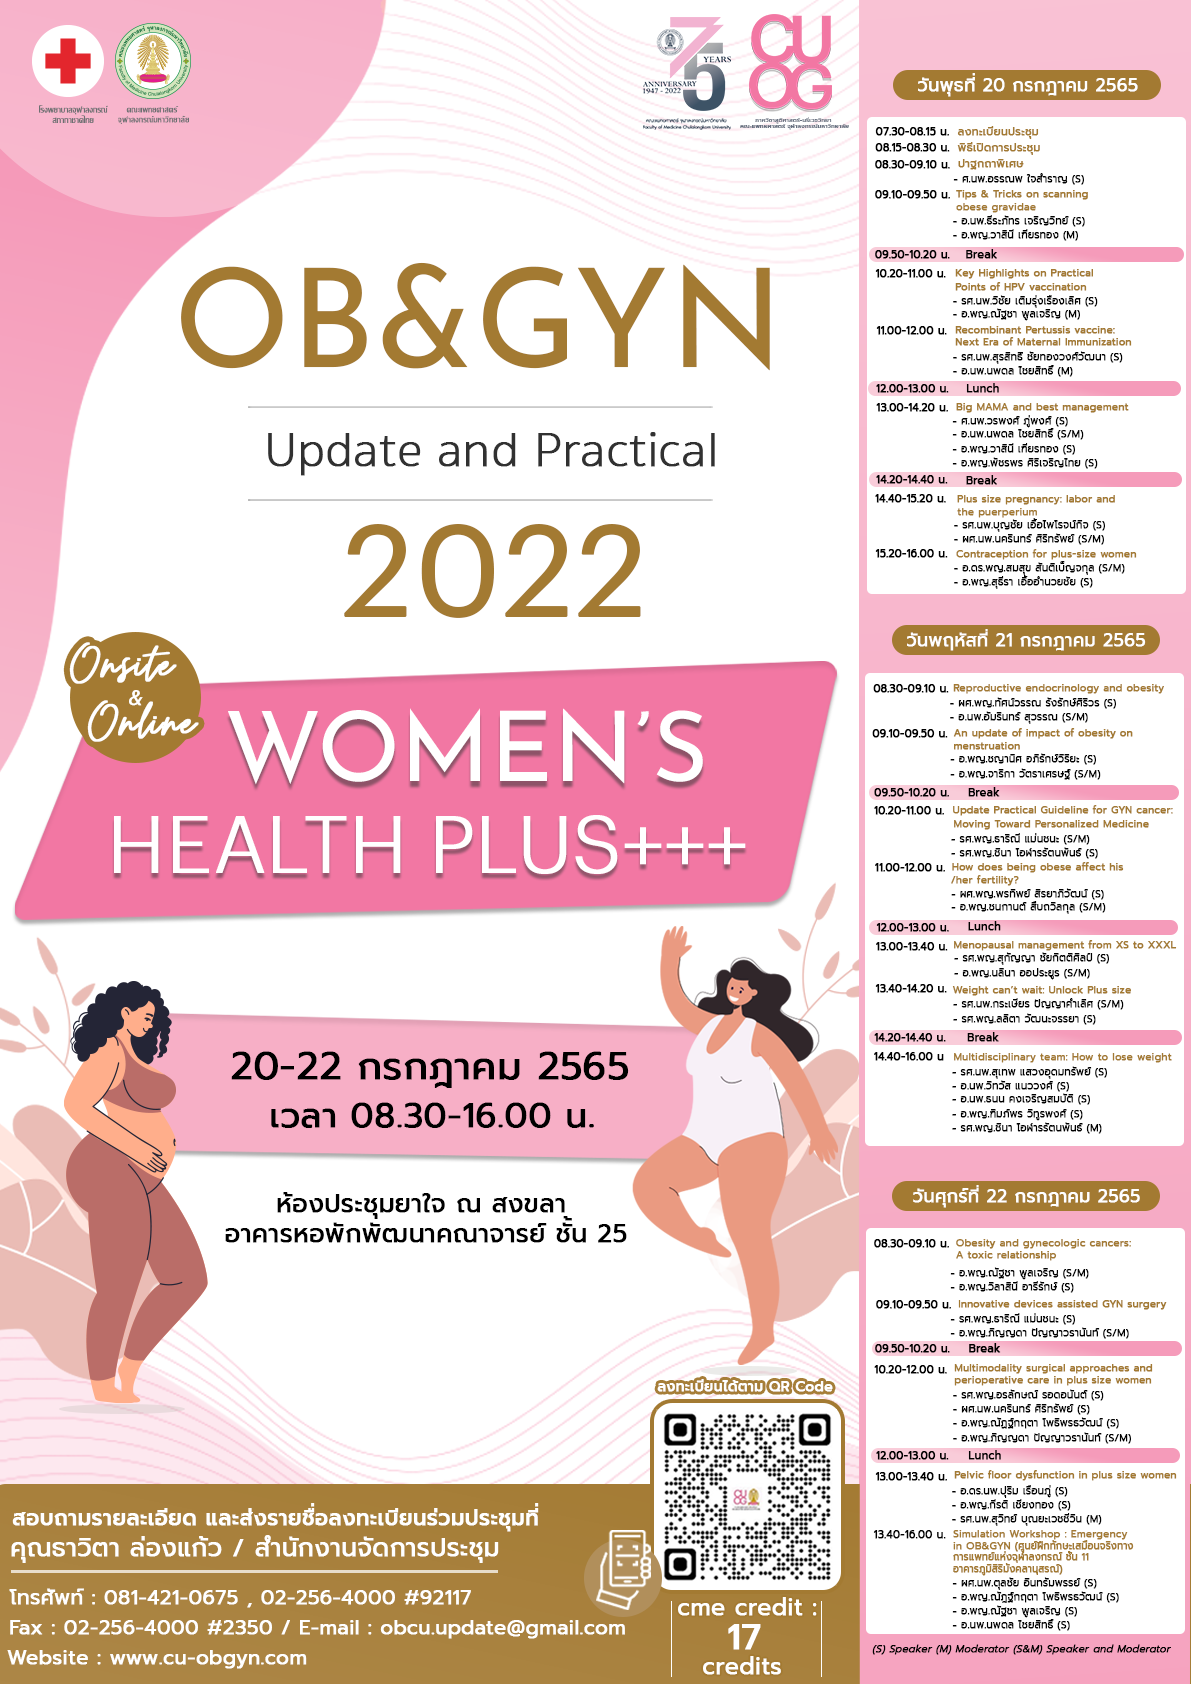 เชิญร่วมงานประชุมวิชาการประจำปี OB&GYN : Update and Practical 2022 l Women’s Health Plus+++